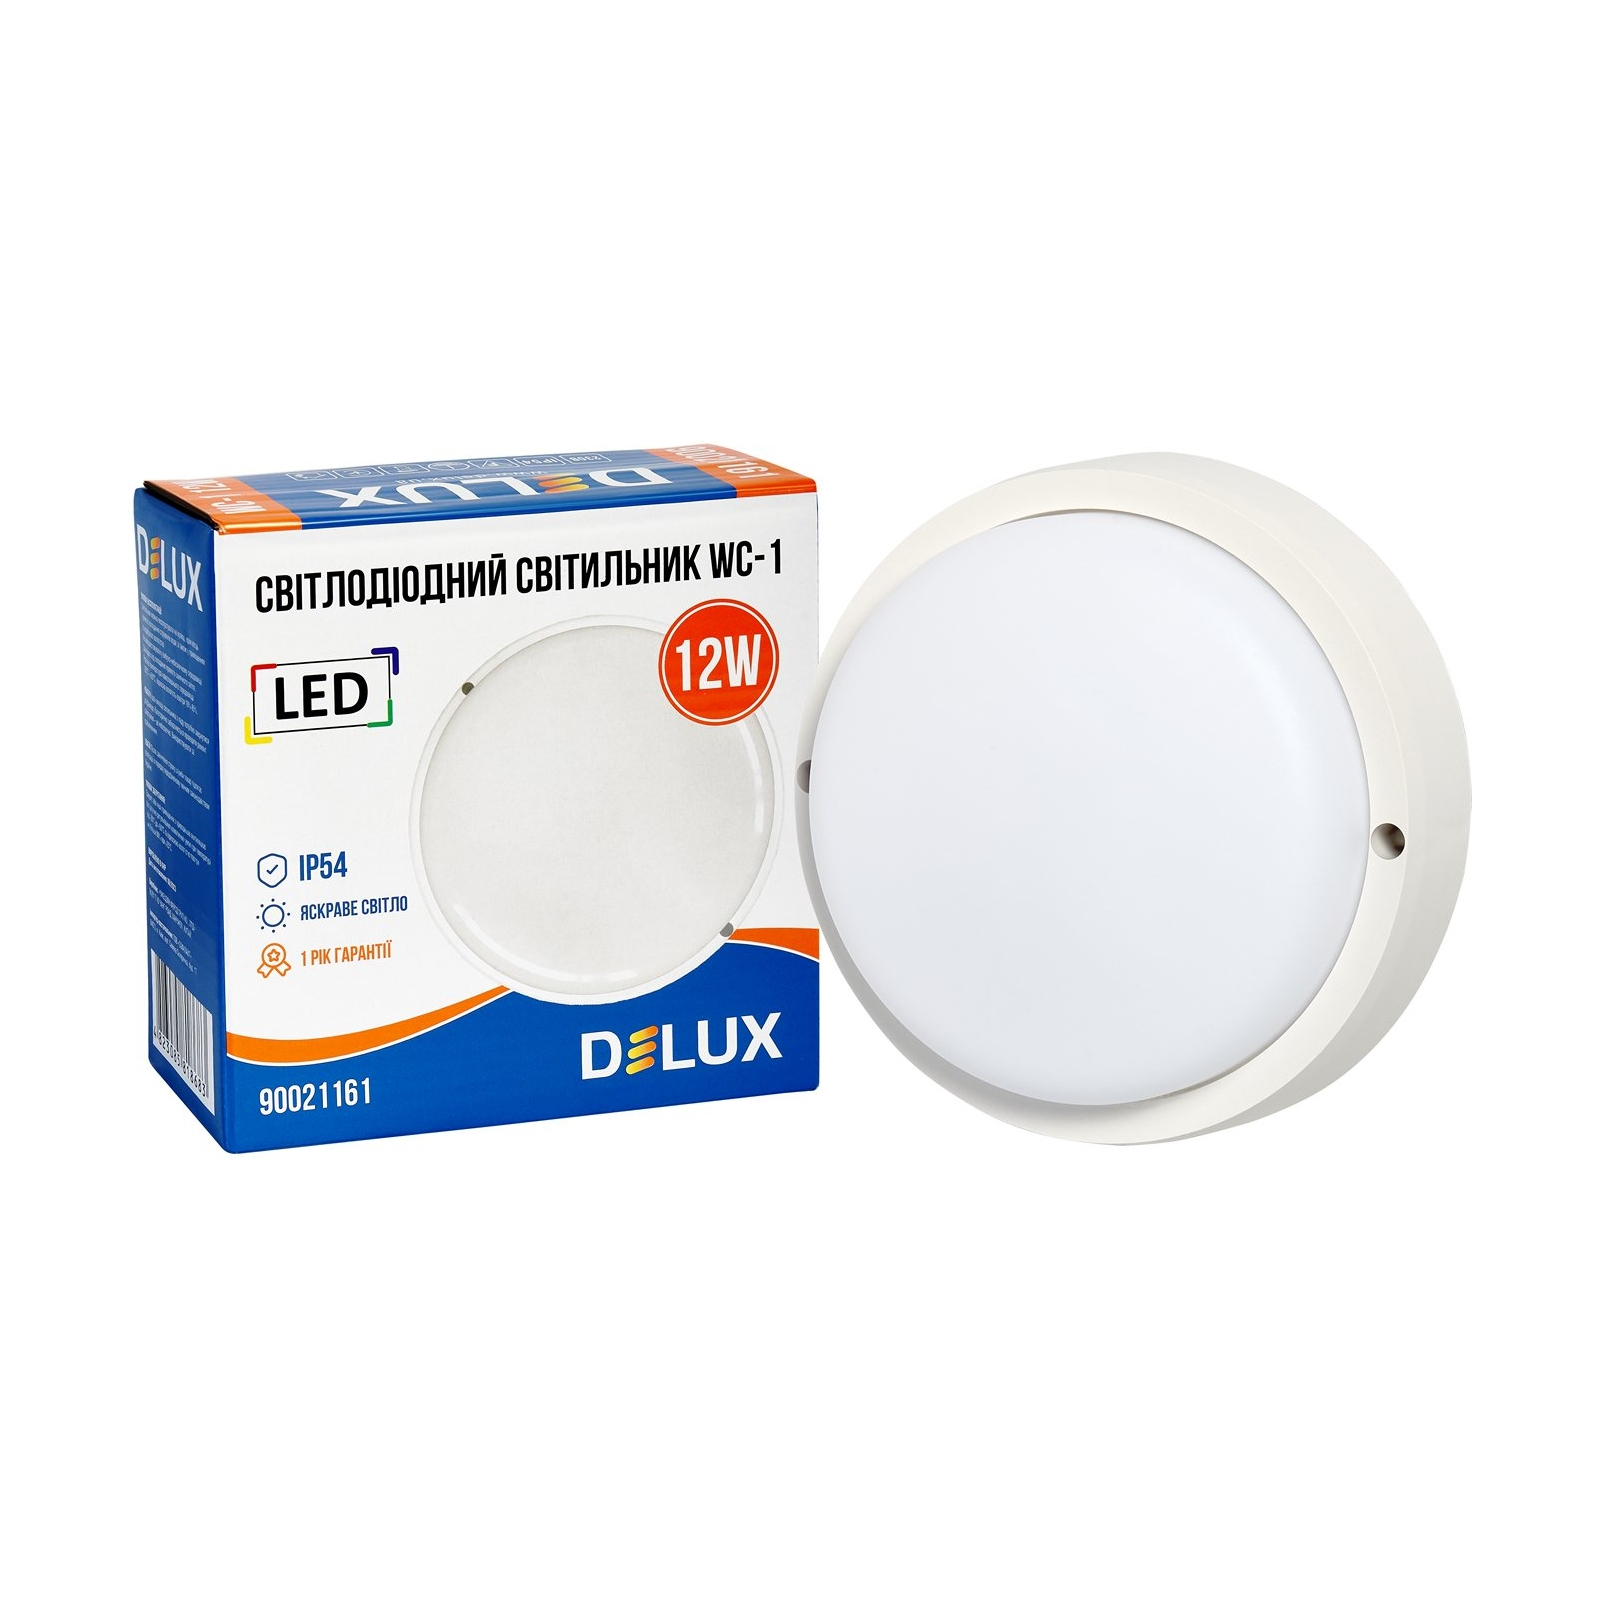 Светильник Delux WC-1 12 Вт 5000K IP54 (90021161) изображение 2